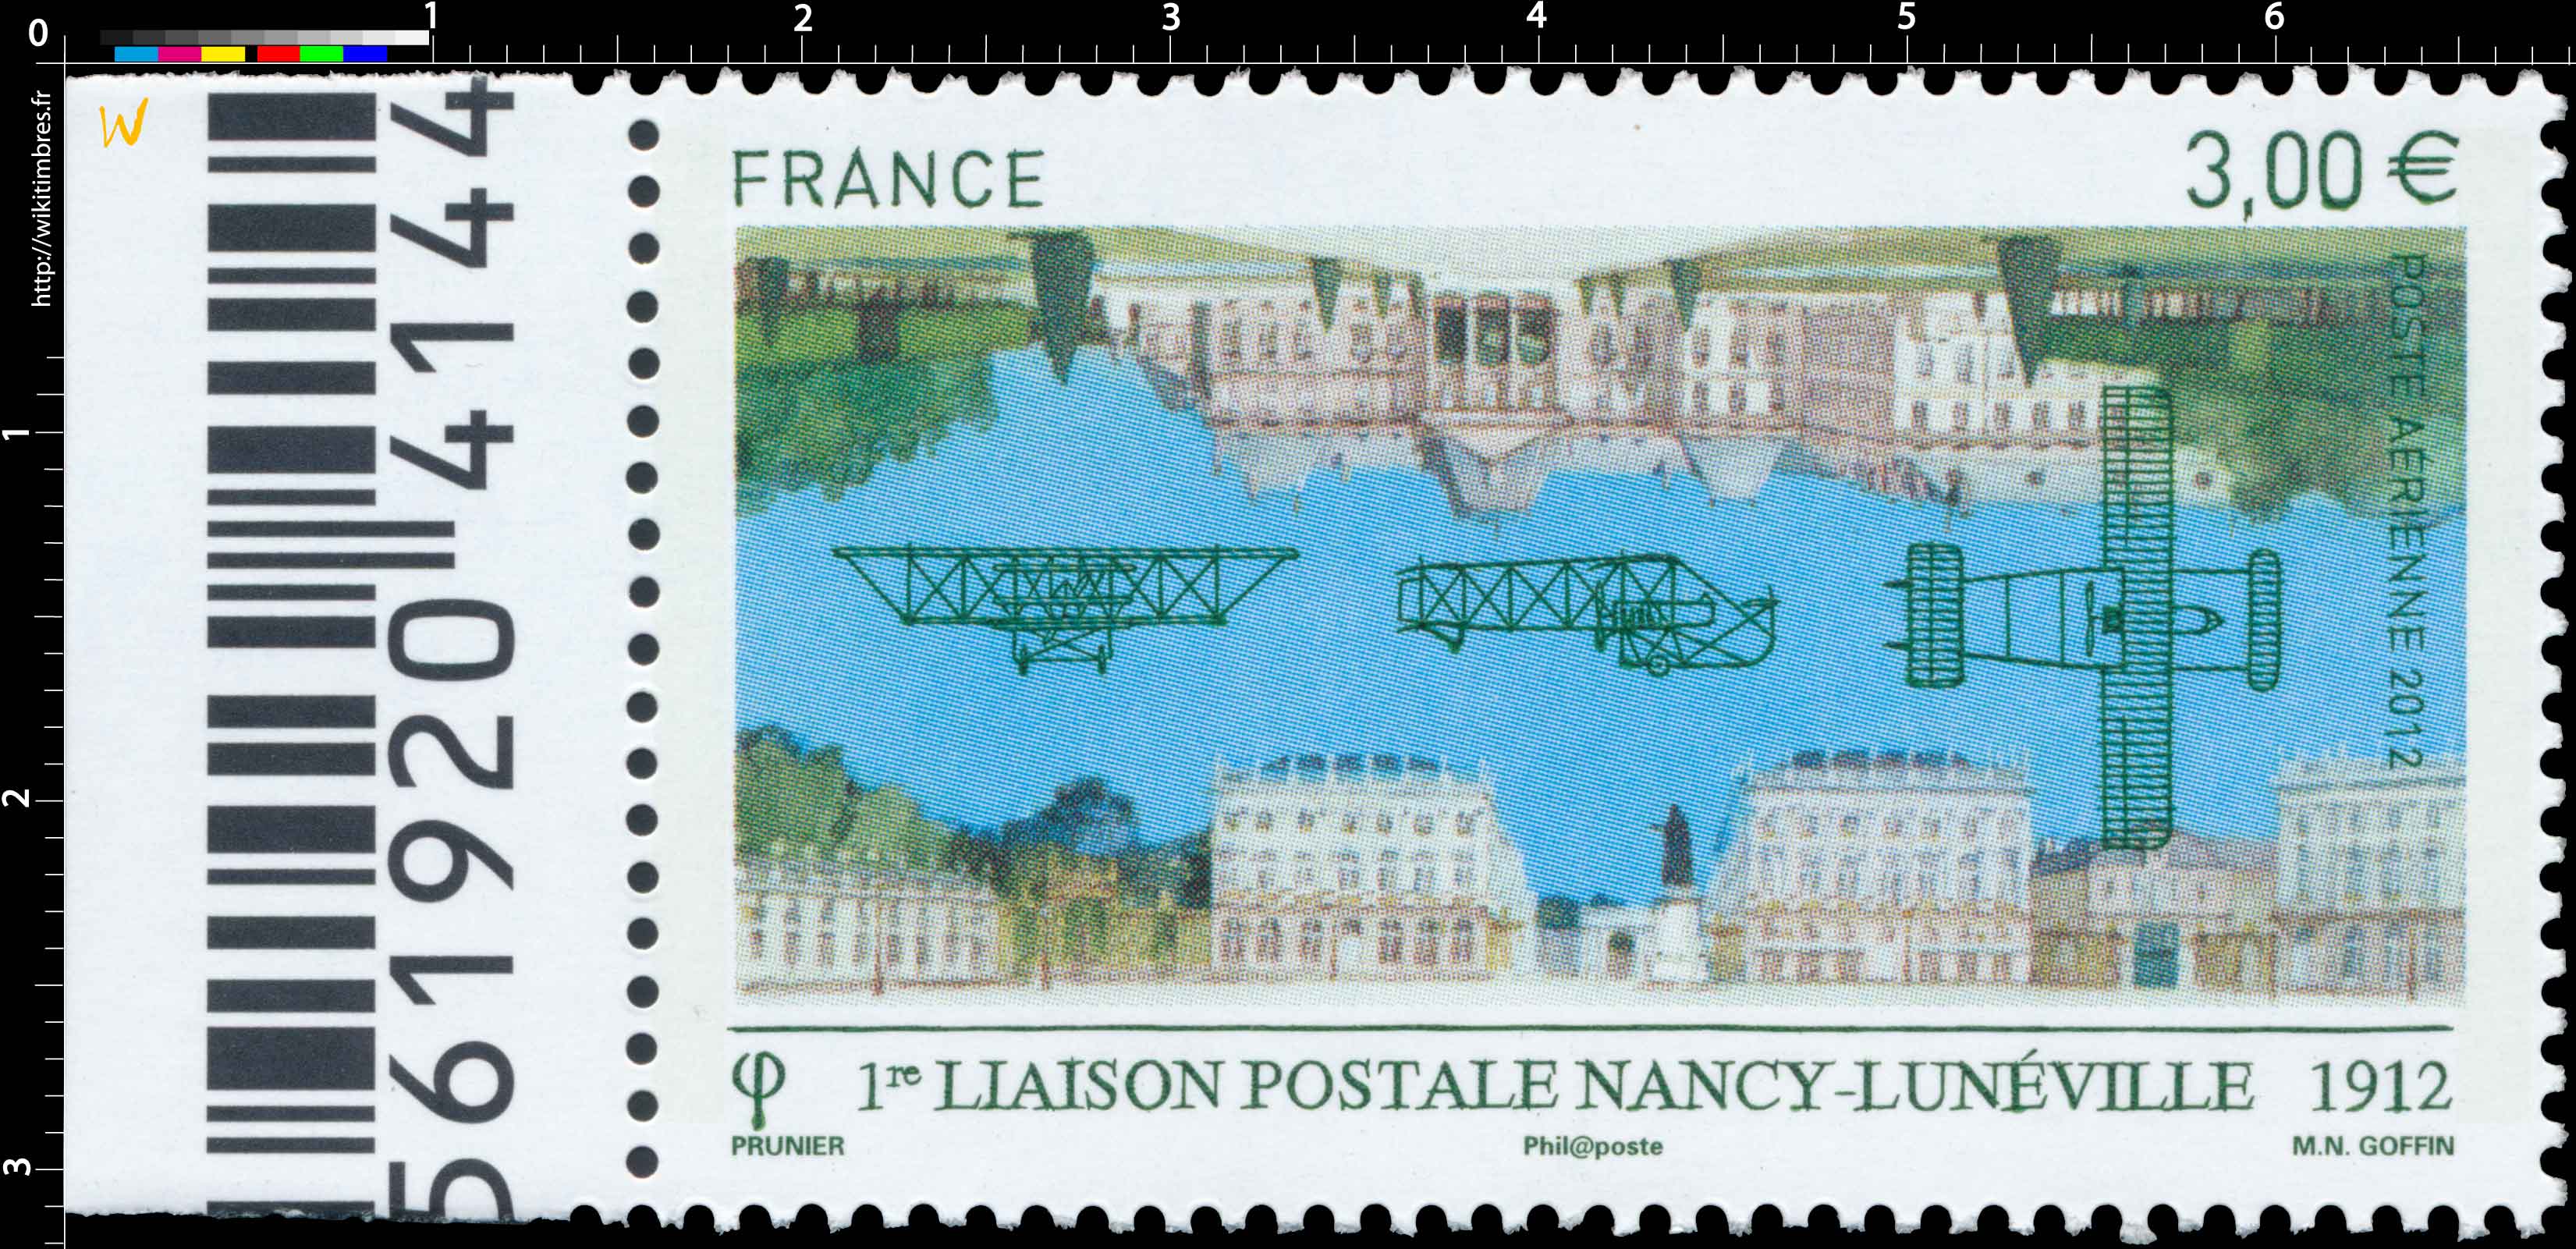 1re liaison postale NANCY-LUNÉVILLE 1912